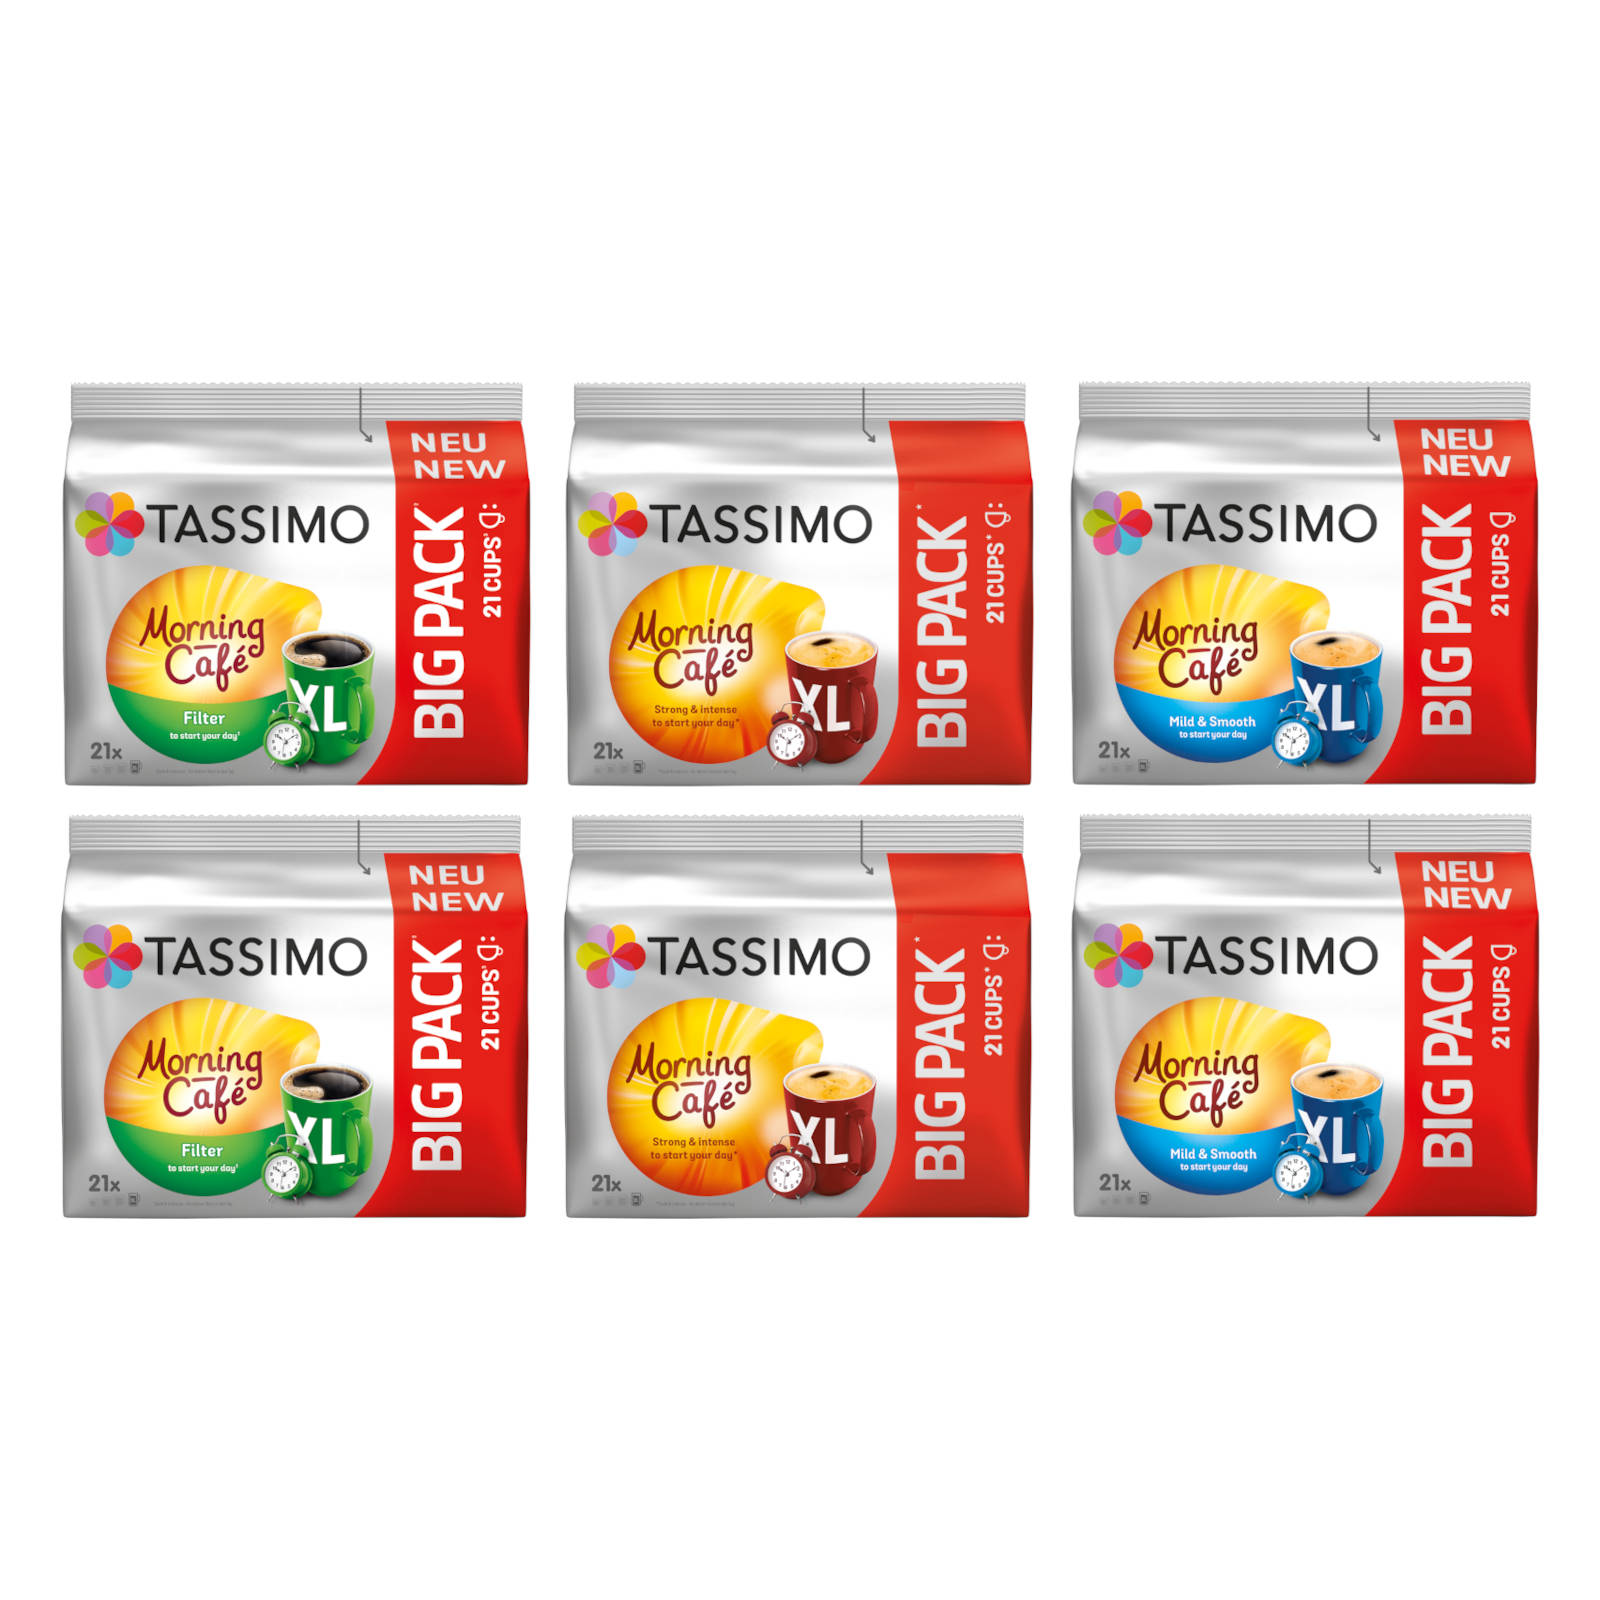 TASSIMO Morning Café XL (Tassimo Packungen Packs Big 3 Sorten Getränke Kaffeekapseln Maschine (T-Disc 6 126 Mix-Paket System))